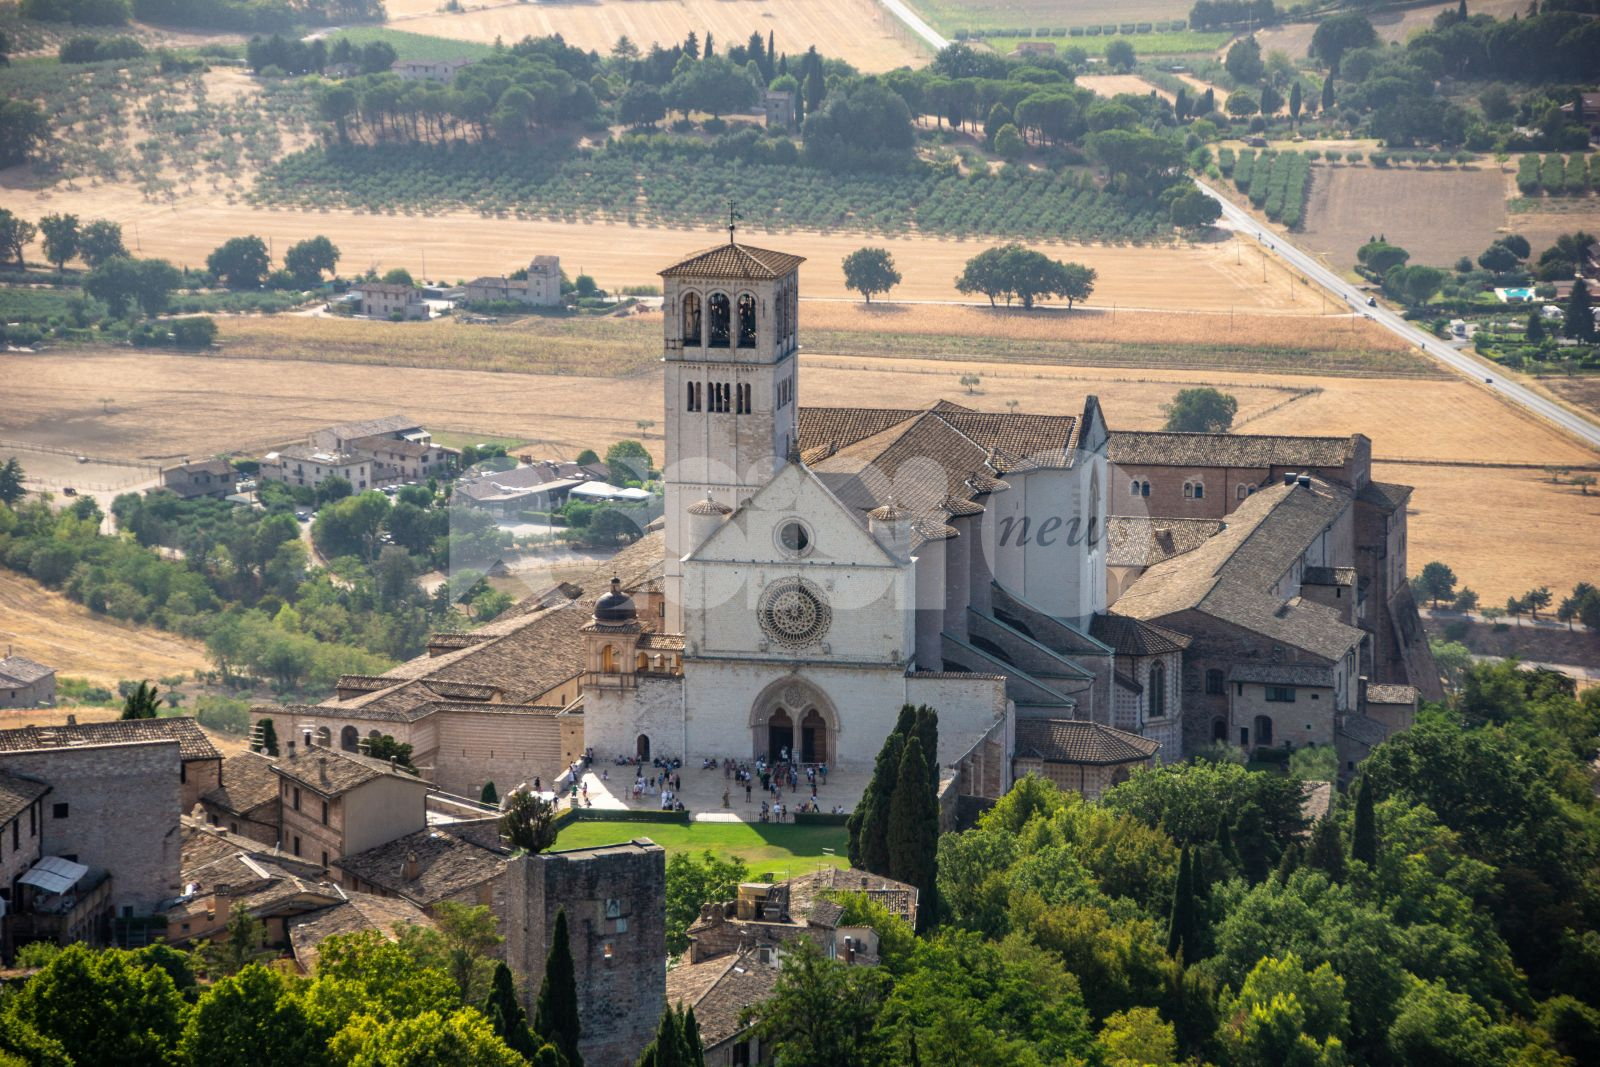 Celebrazioni ottavo centenario morte San Francesco di Assisi, Parlamentari Lega: “Approvare ddl prima di fine legislatura”